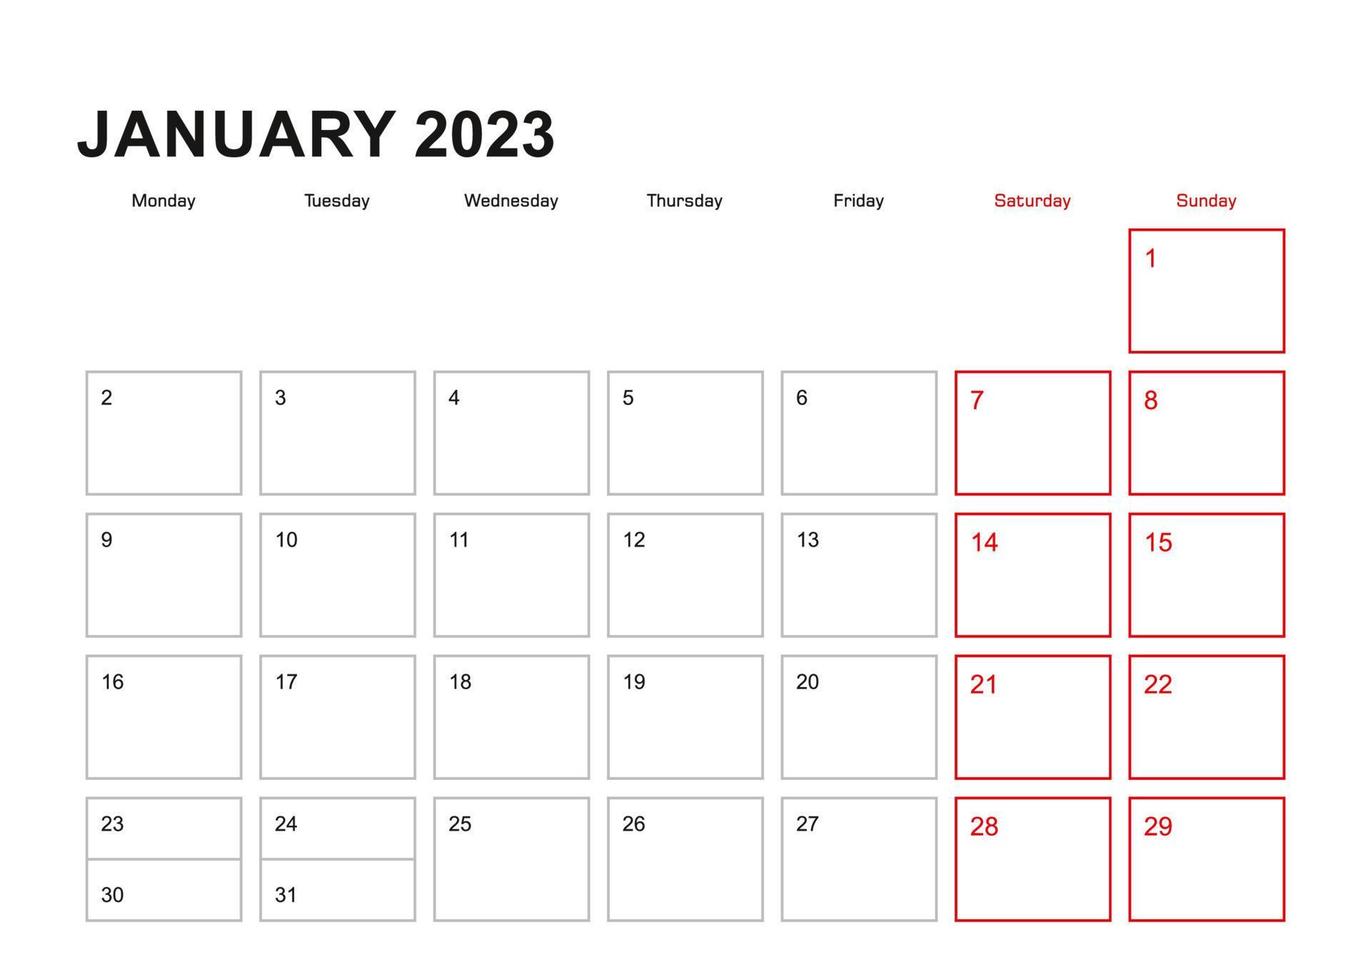 vägg planerare för januari 2023 i engelsk språk, vecka börjar i måndag. vektor